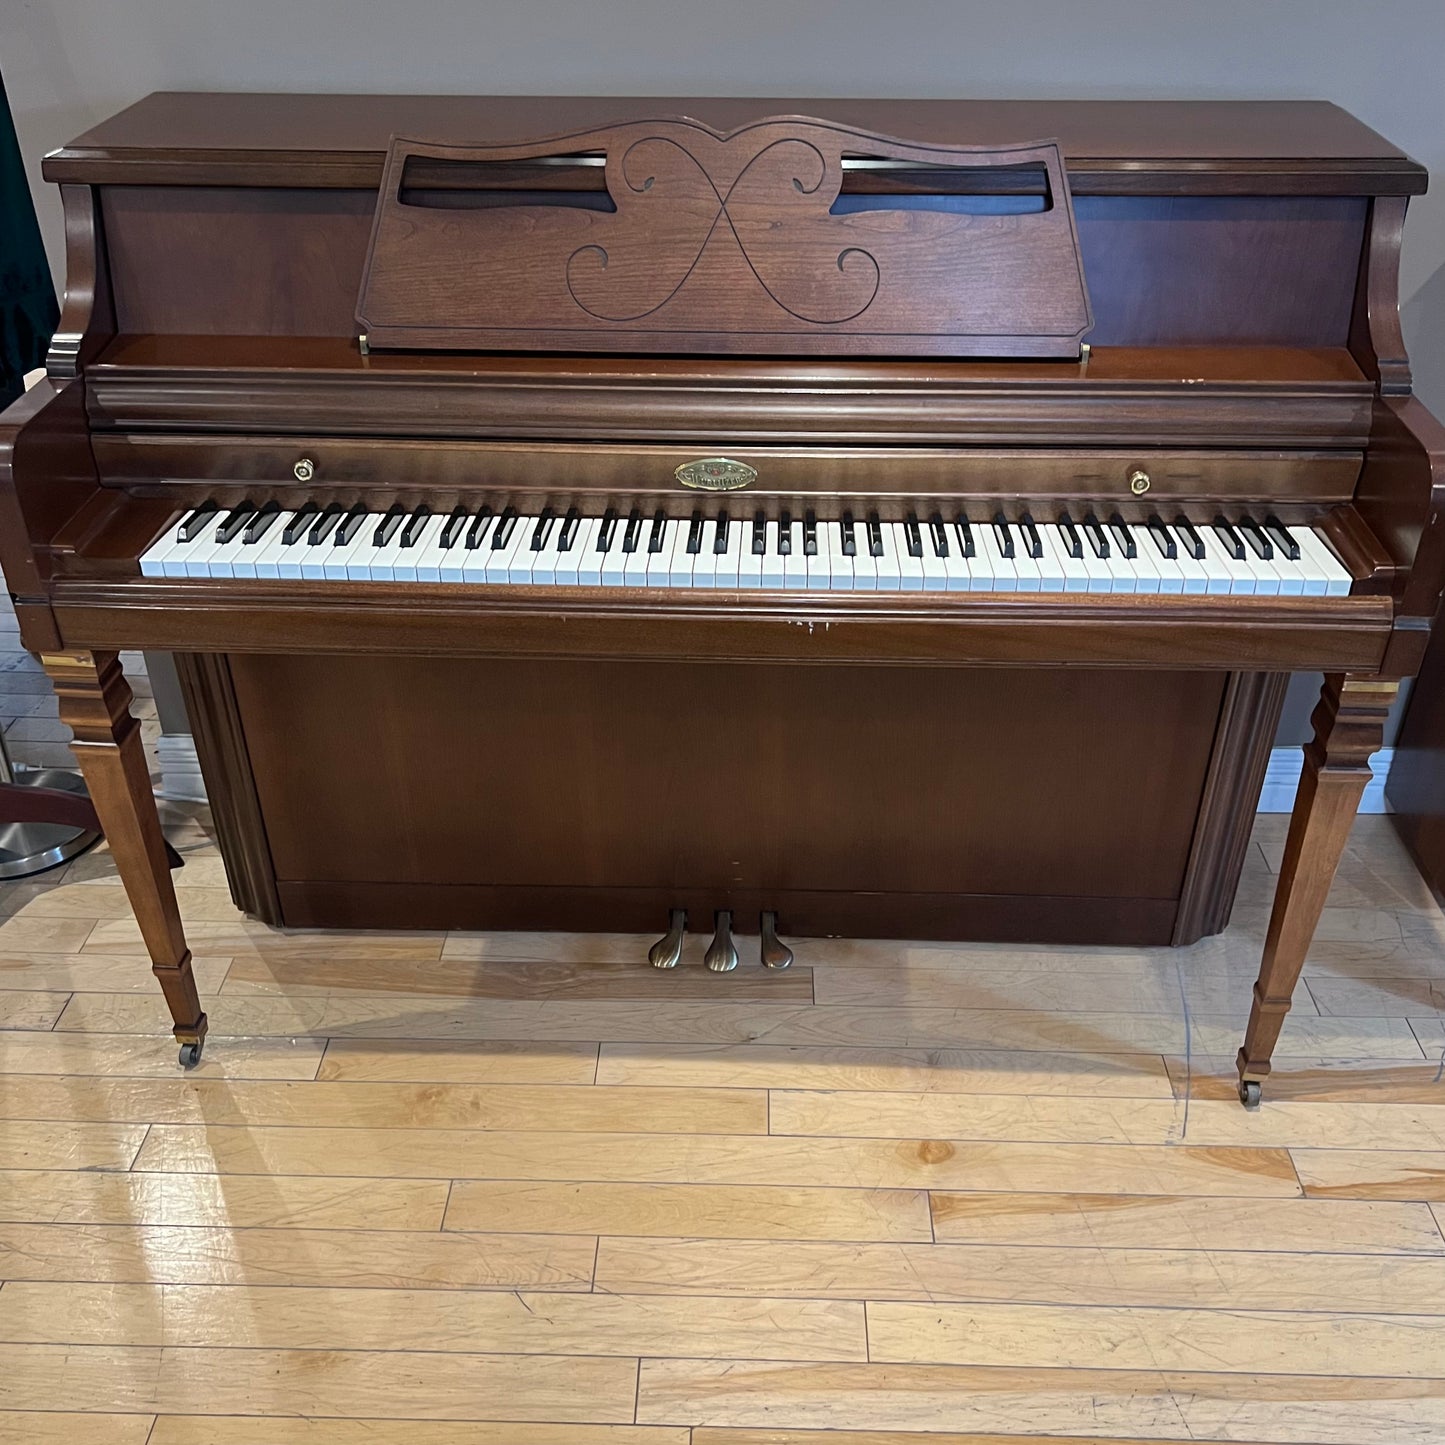 Wurlitzer upright piano - 42" (107cm)